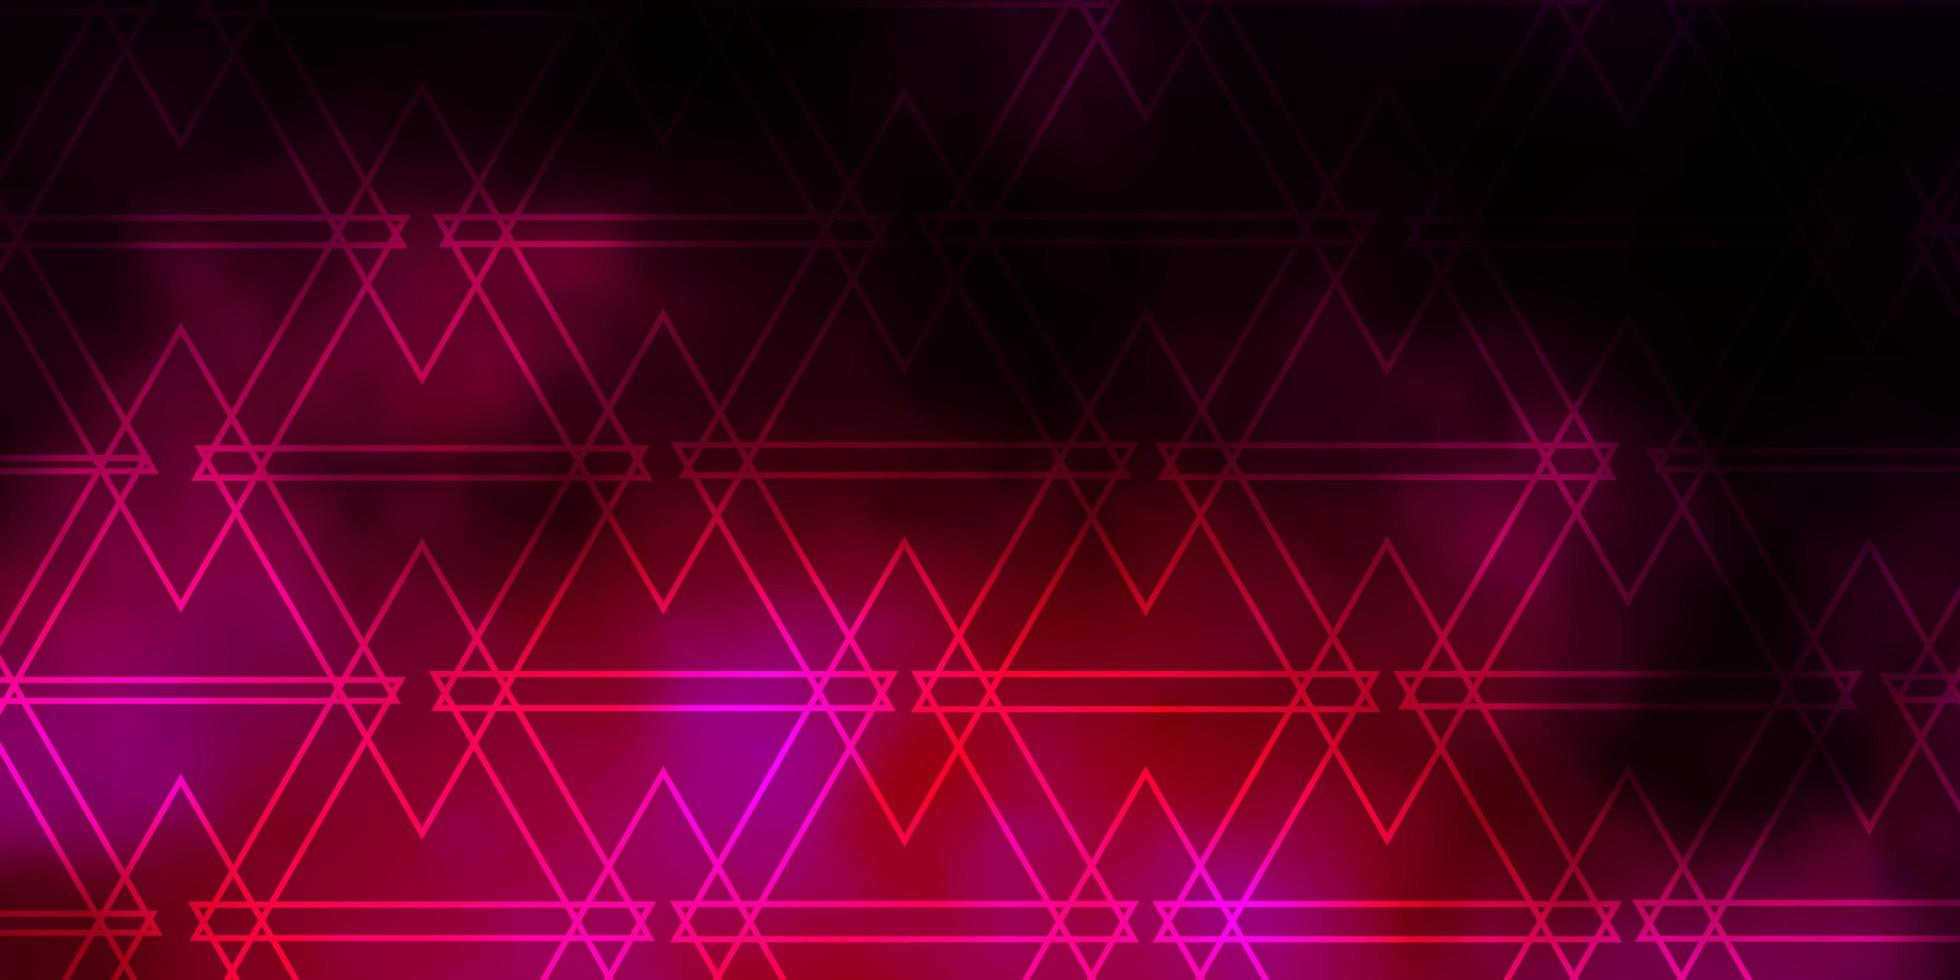 padrão de vetor rosa escuro com estilo poligonal.